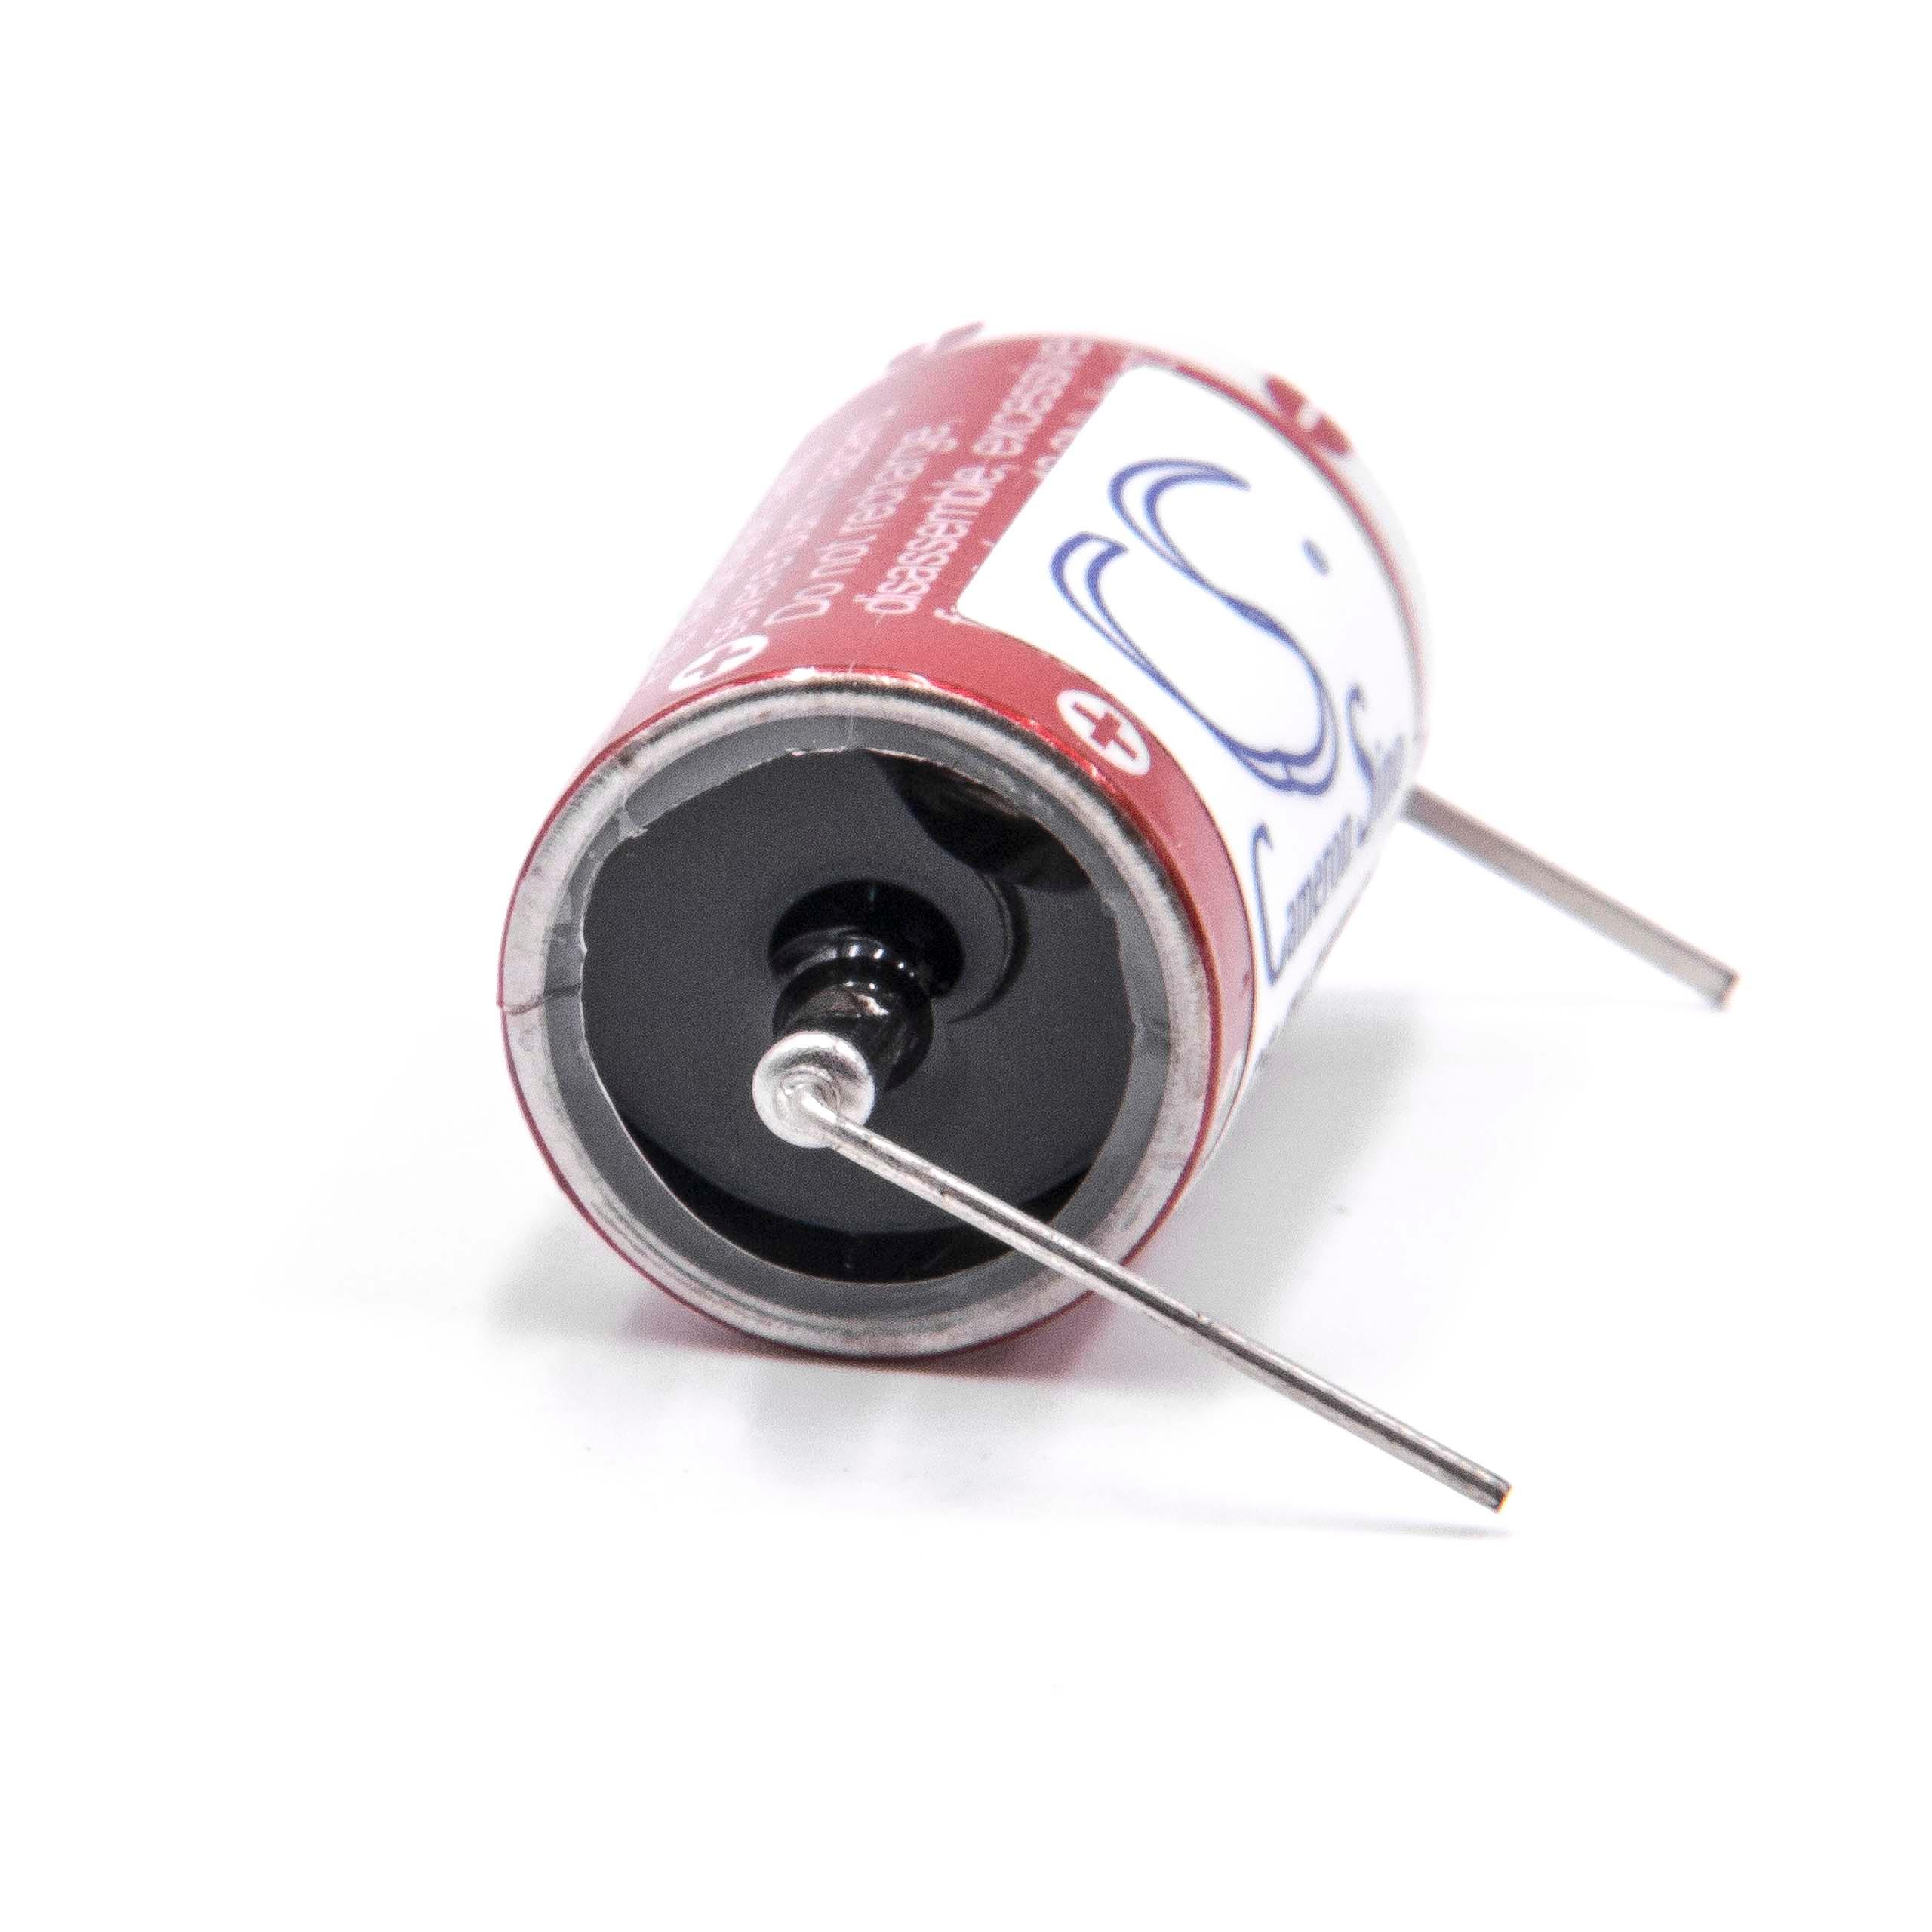 Batterie remplace Maxell ER3 universelle pour divers appareils - 1100mAh 3,6V Li-MnO2